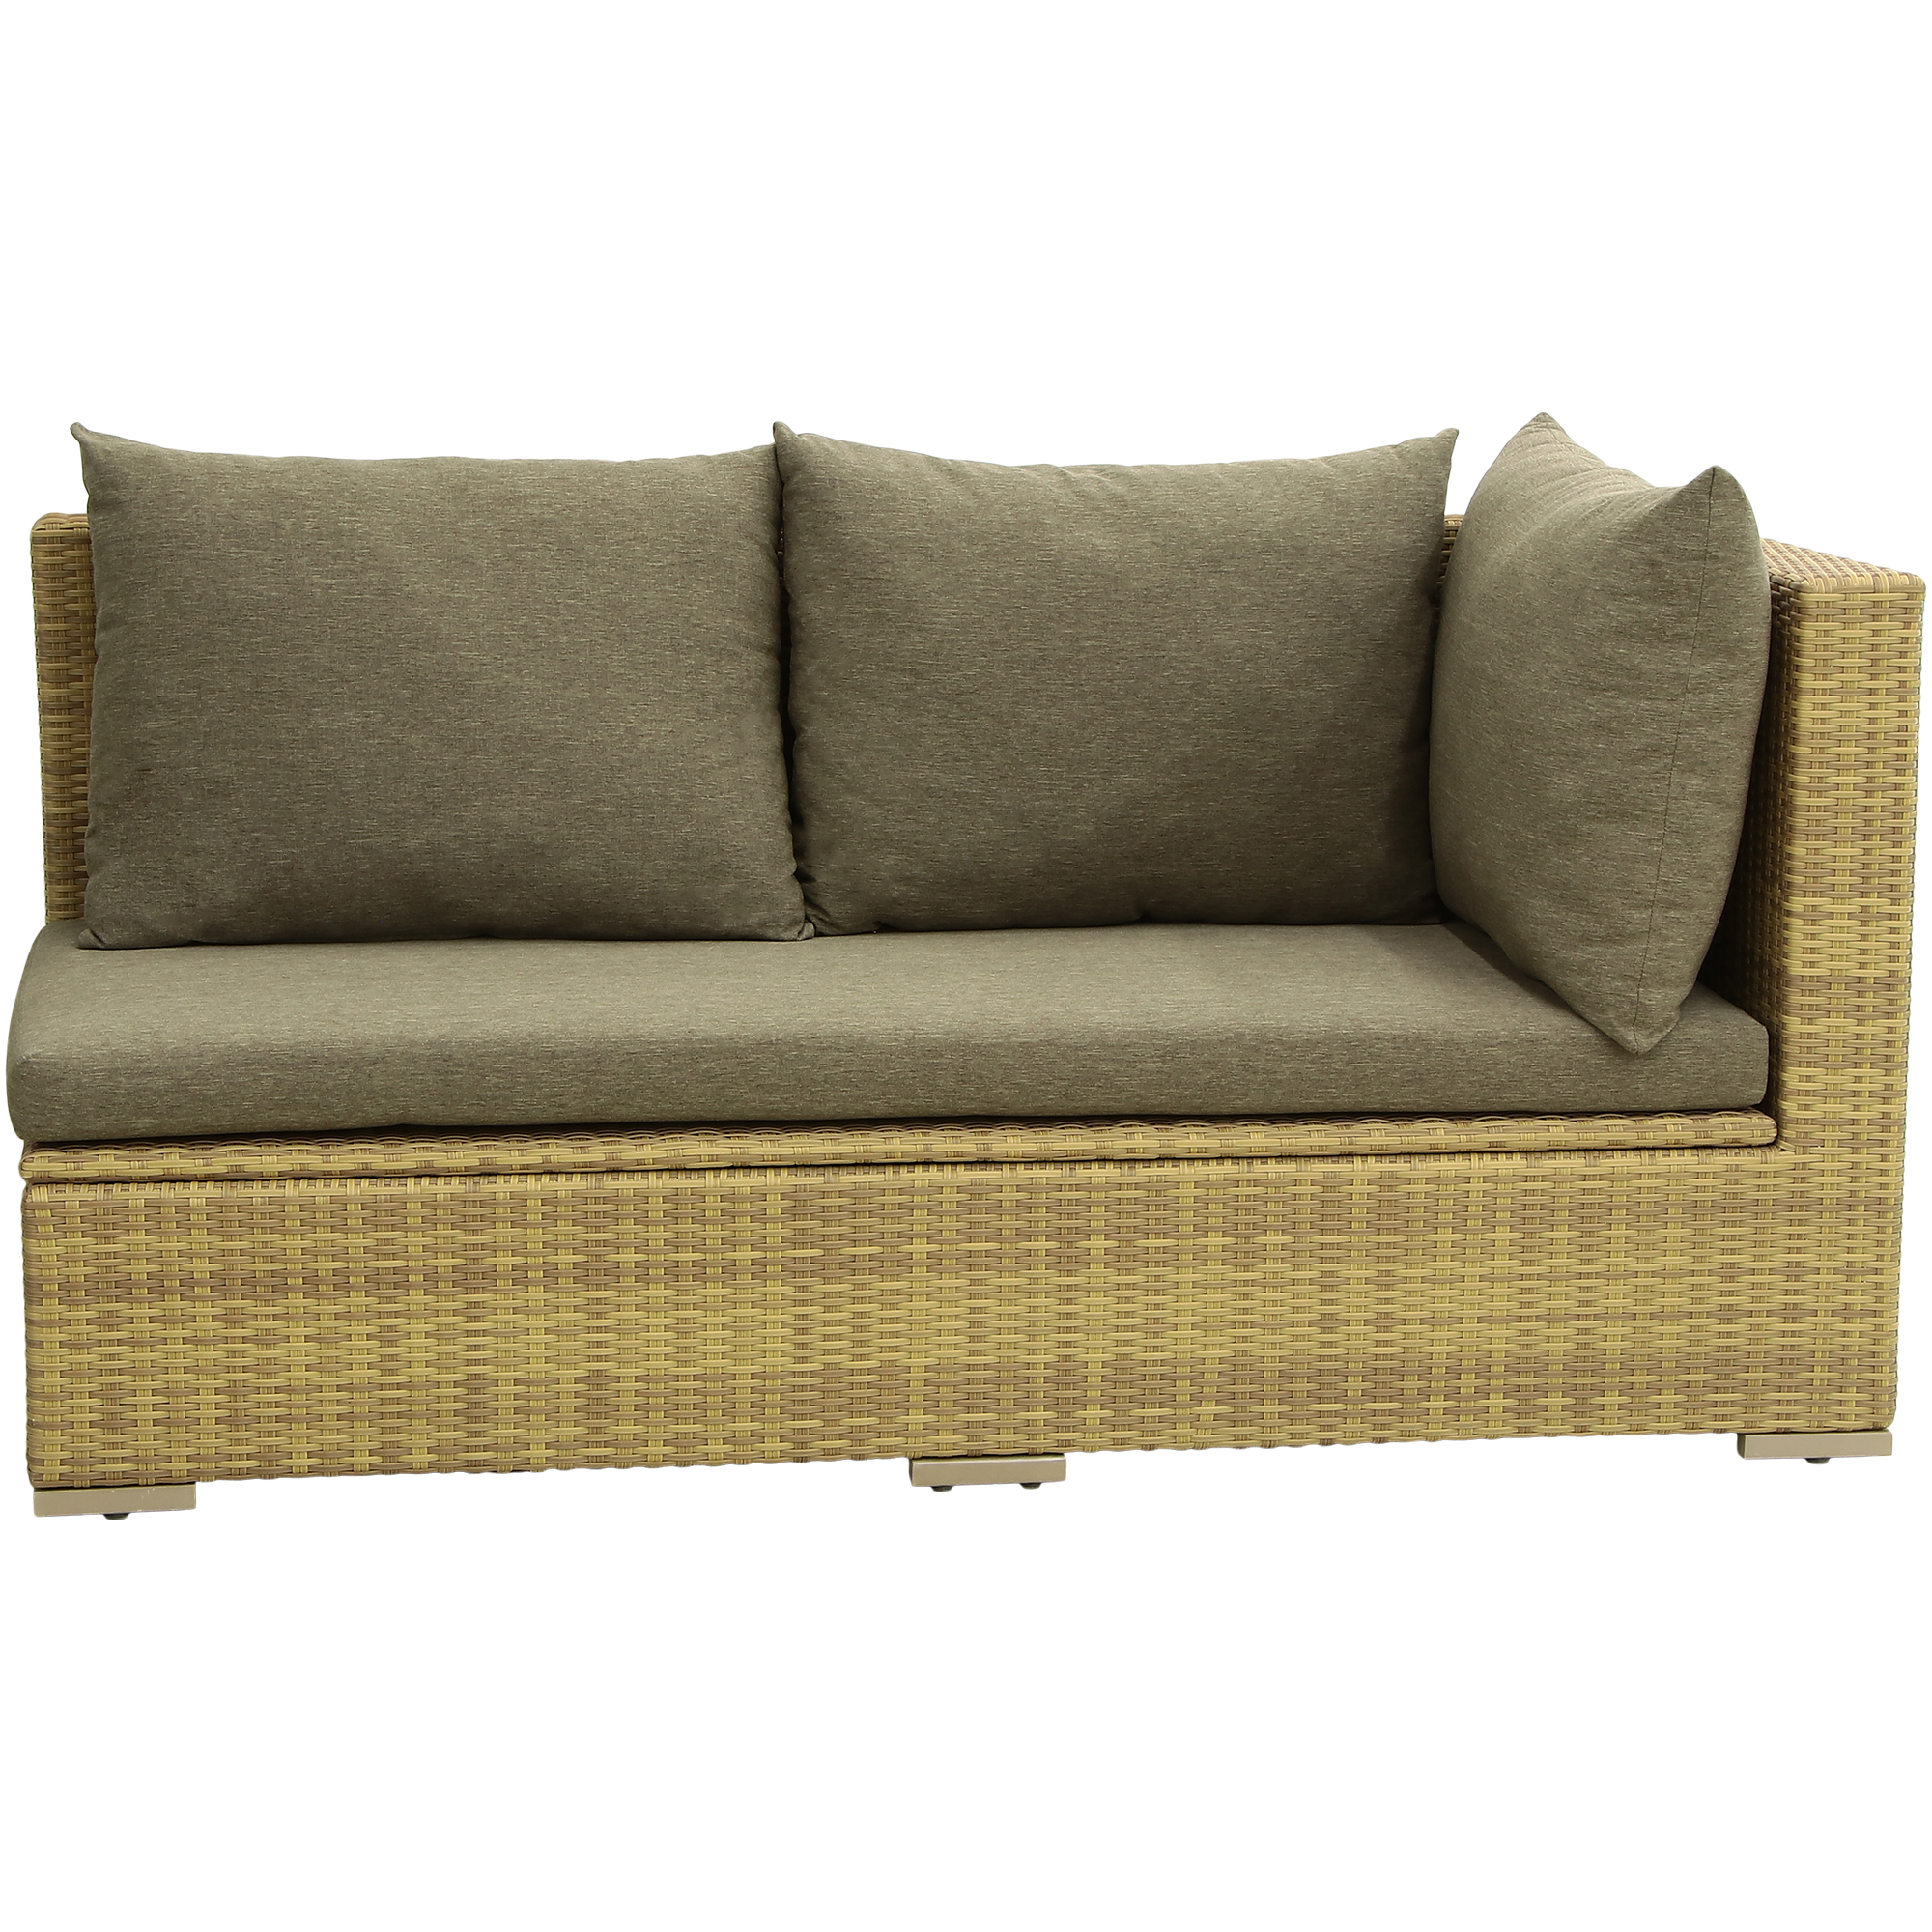 Комплект мебели Ronica Le Montat 3 предмета, цвет коричневый, размер 85х180х89 / 85х182х89 - фото 16